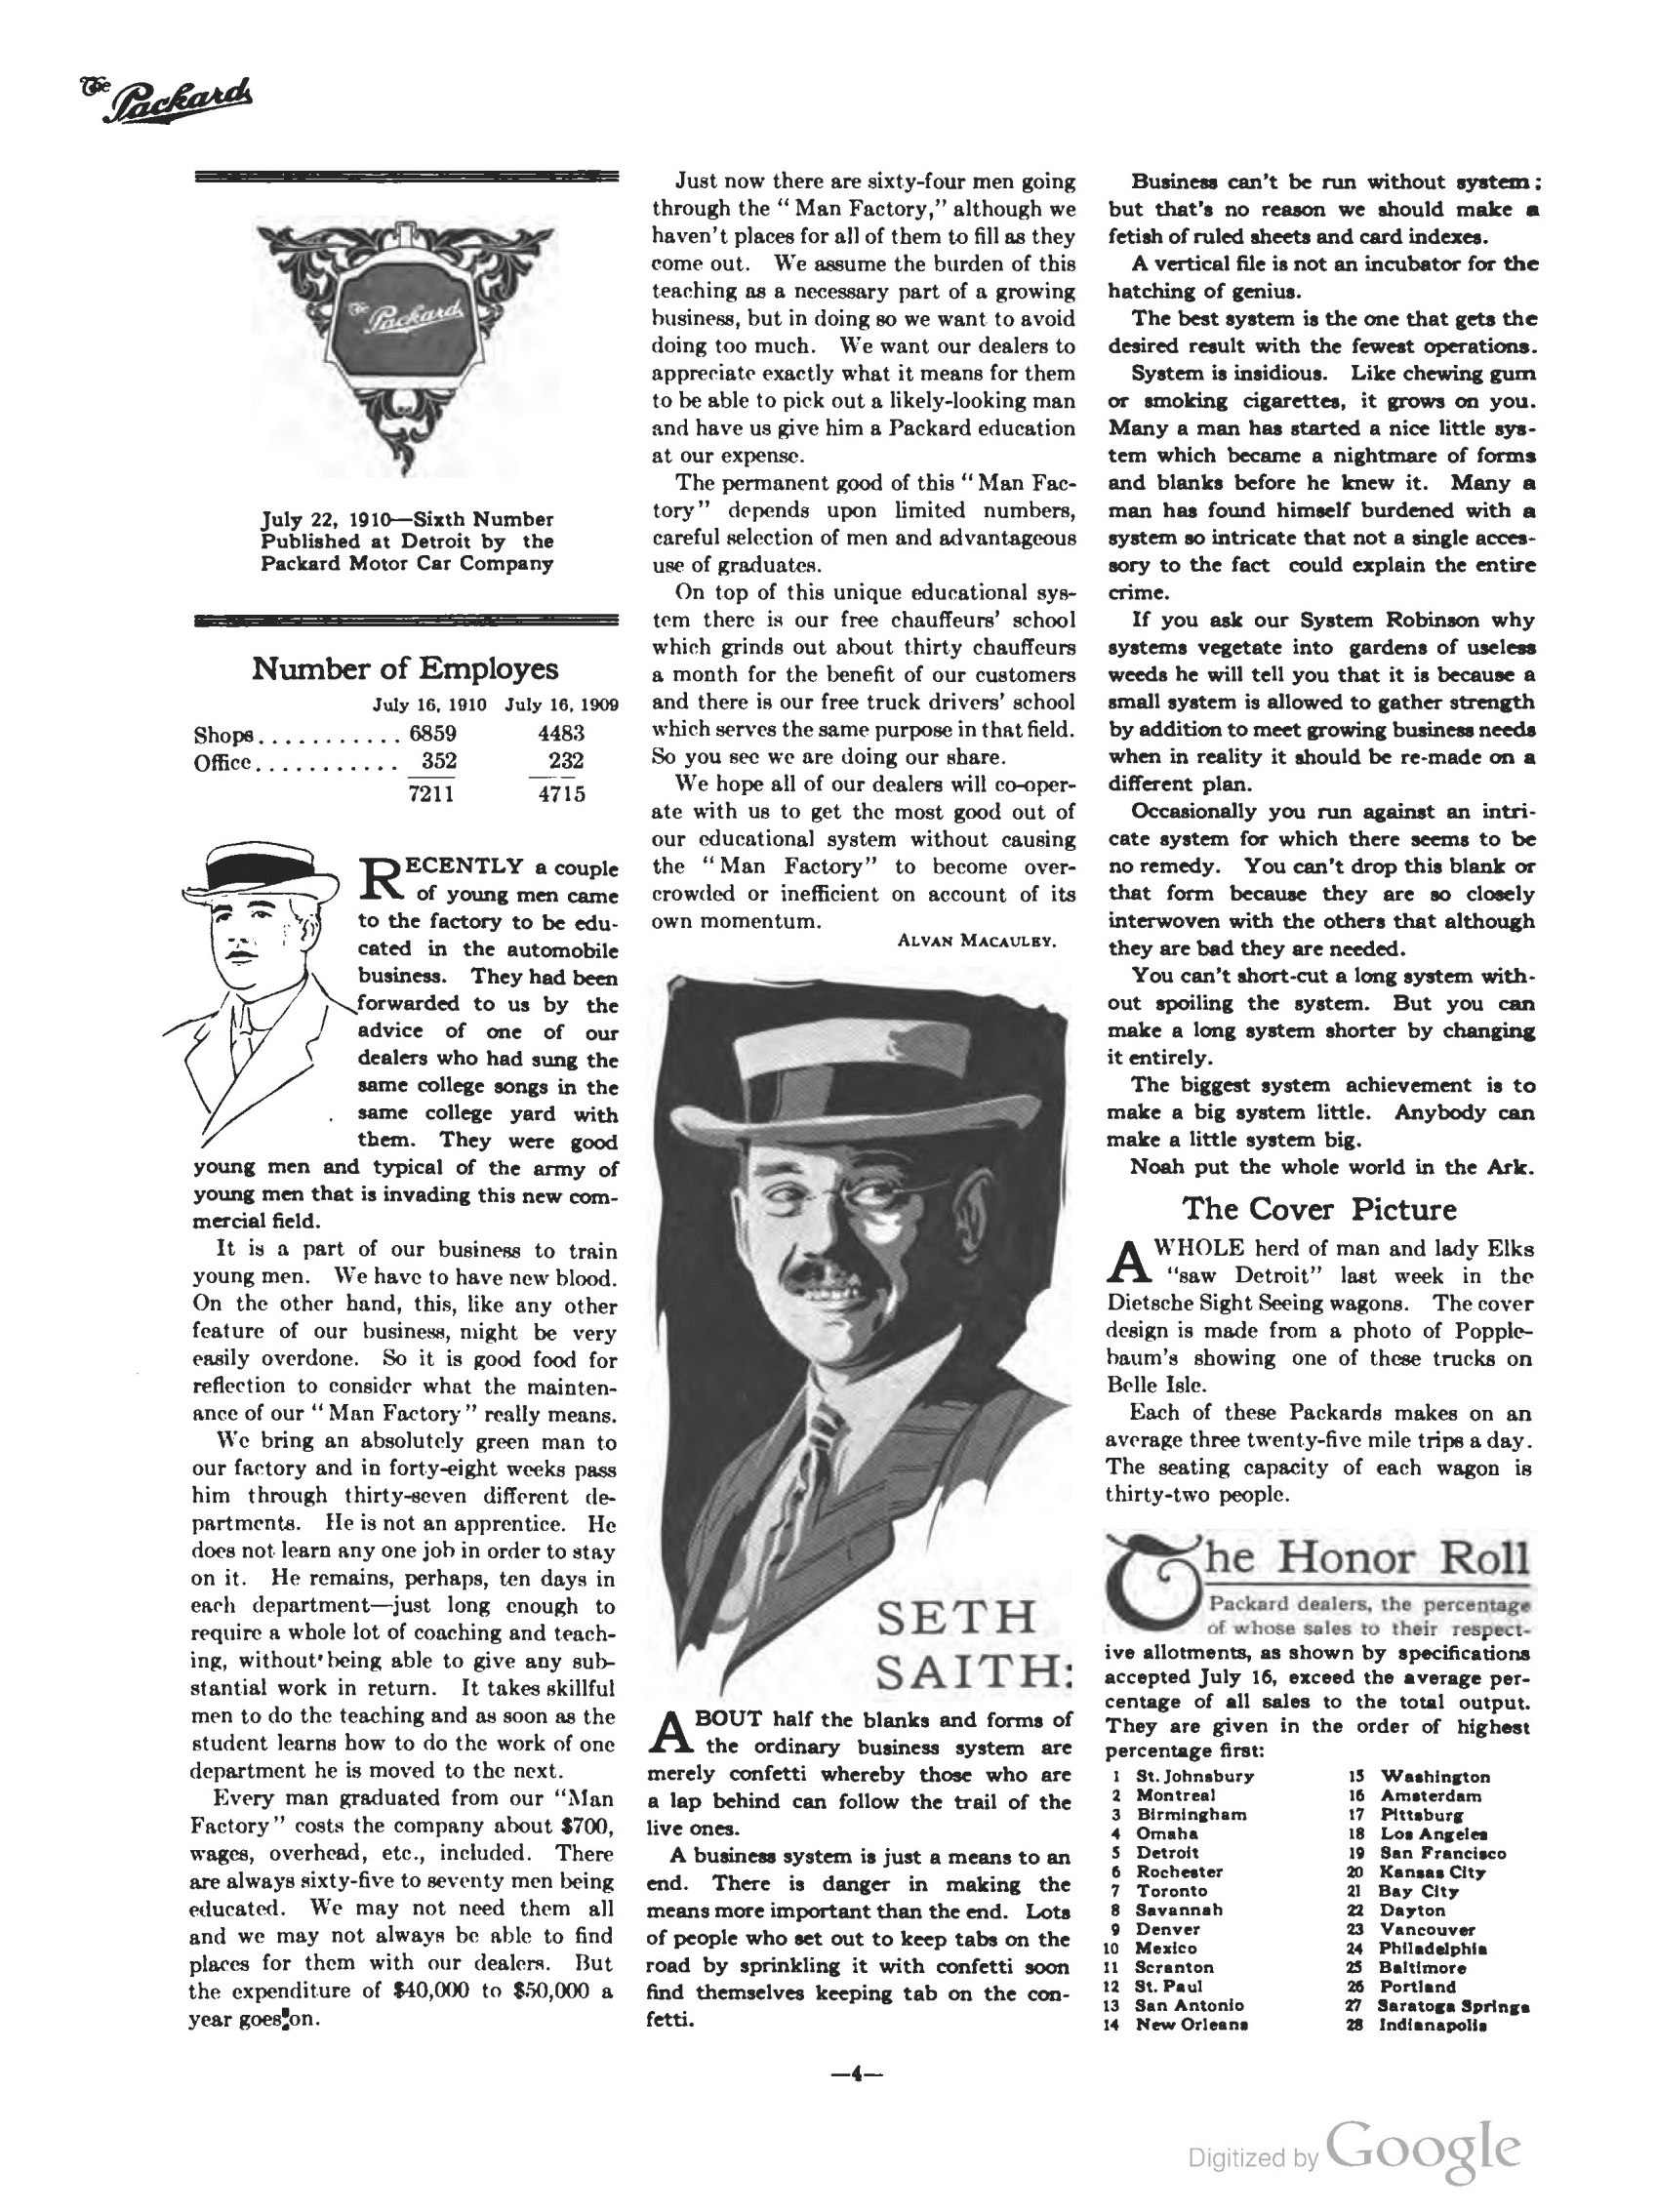 1910_The_Packard_Newsletter-088